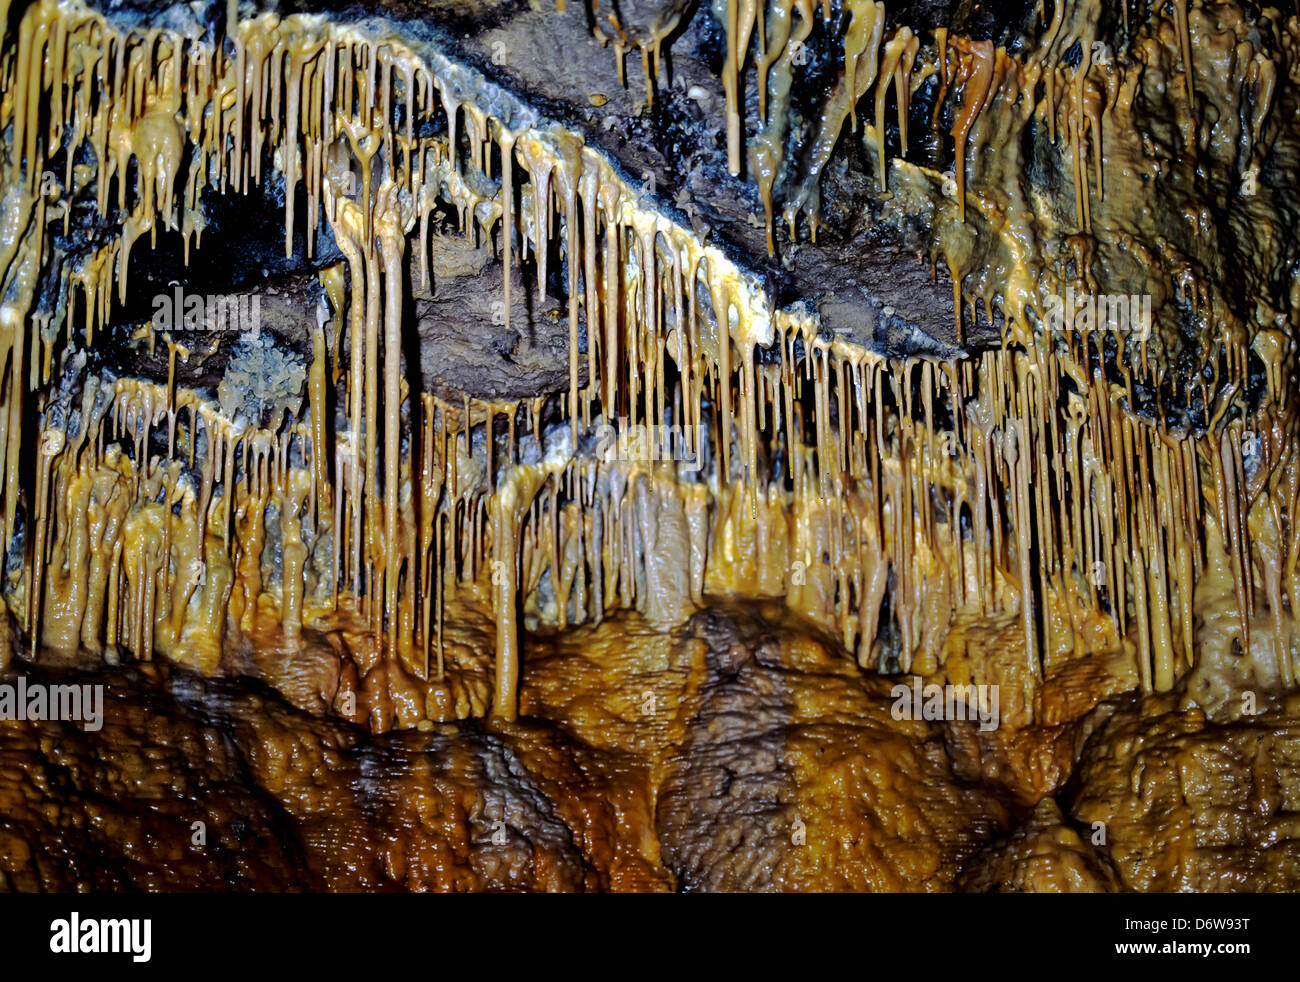 8492. Las formaciones de estalactitas y estalagmitas, Treak Cliff Cavern, Derbyshire, Inglaterra, Europa Foto de stock